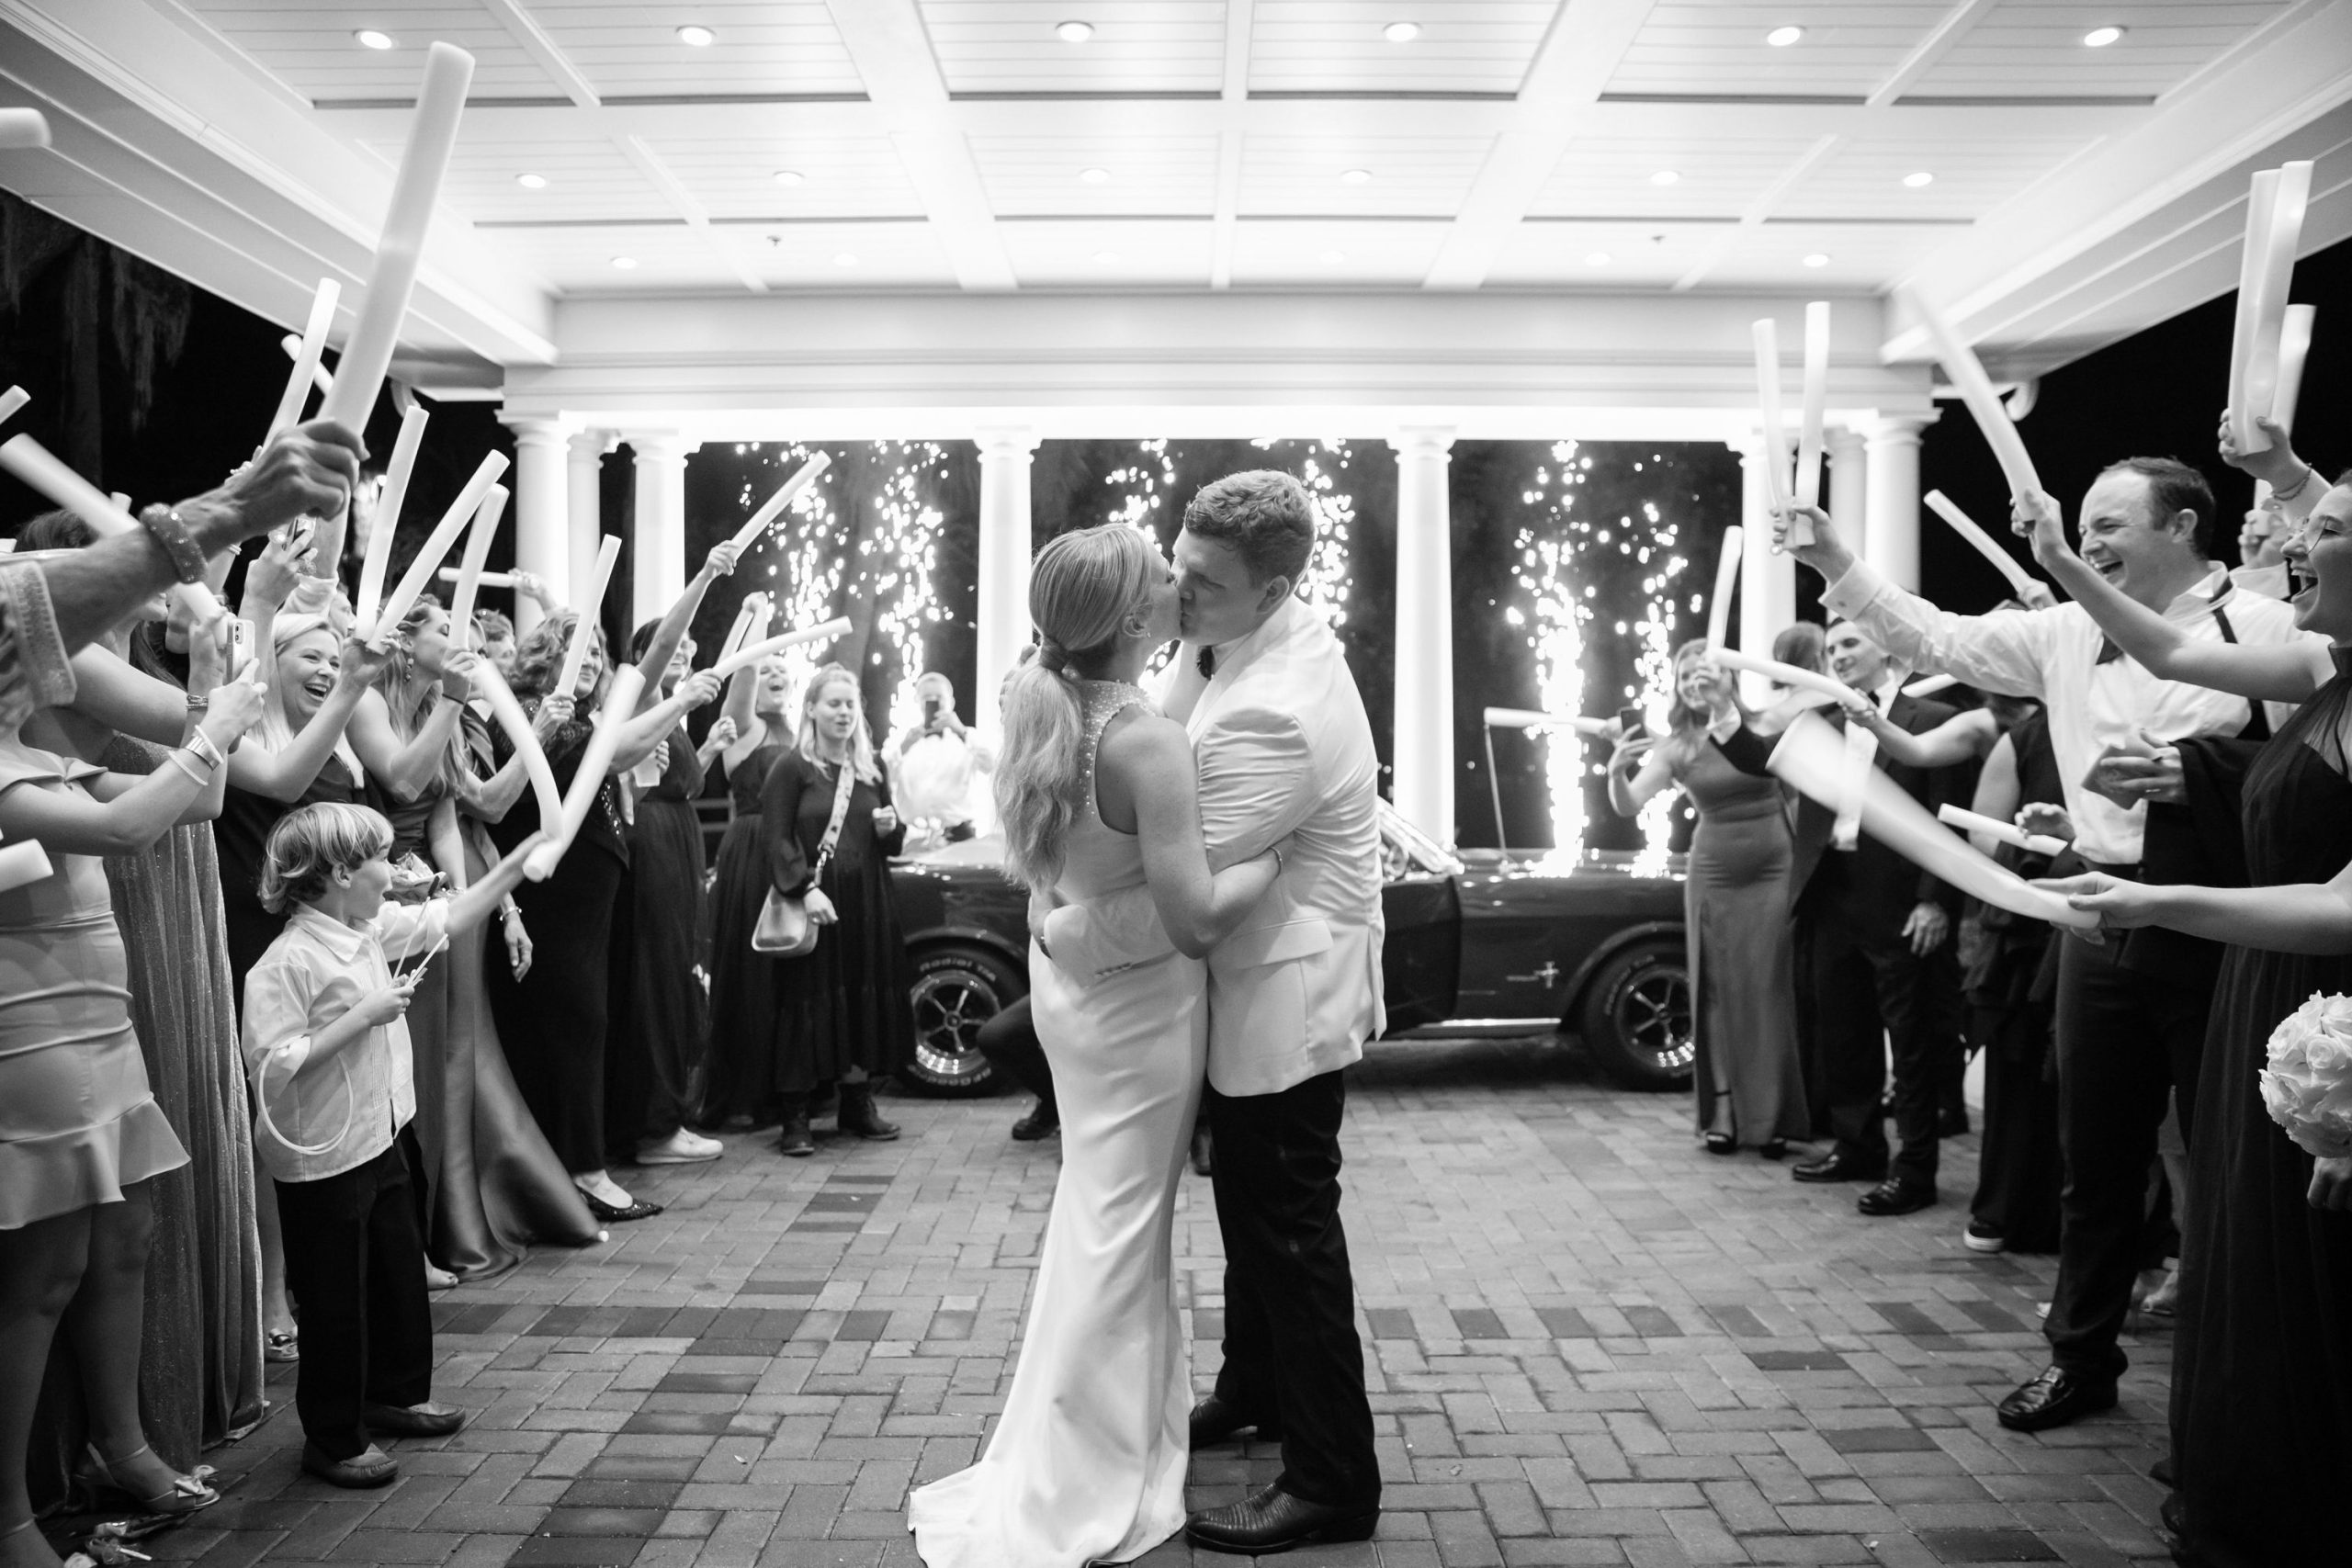 Karli Harvey's Wedding: Behind the Scenes